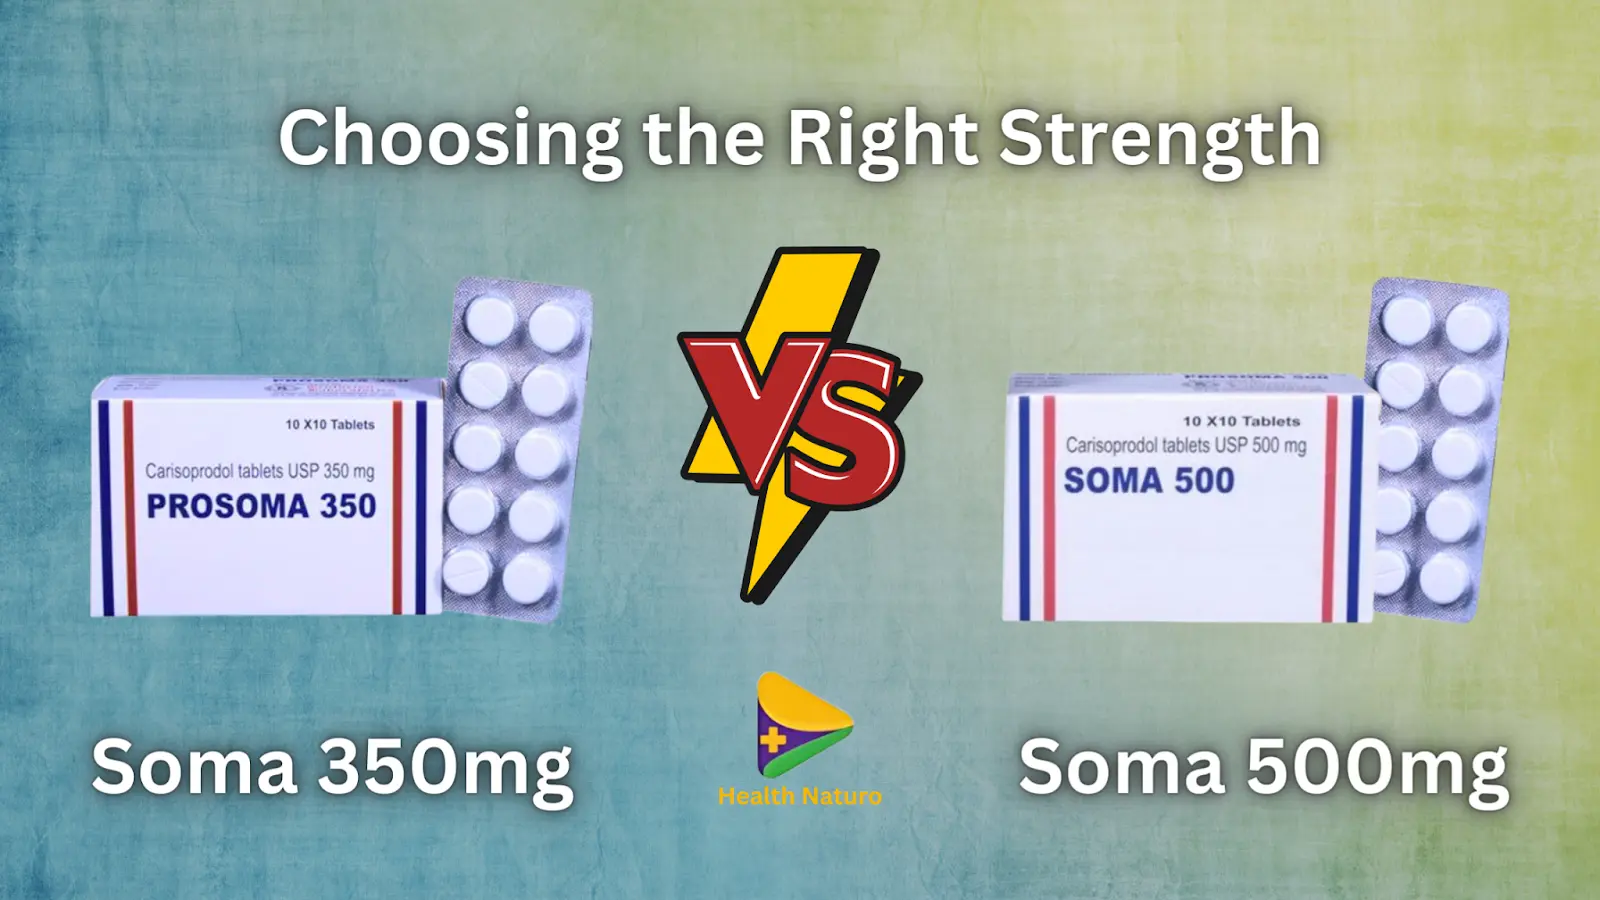 Soma 350mg vs 500mg: Choosing the Right Strength